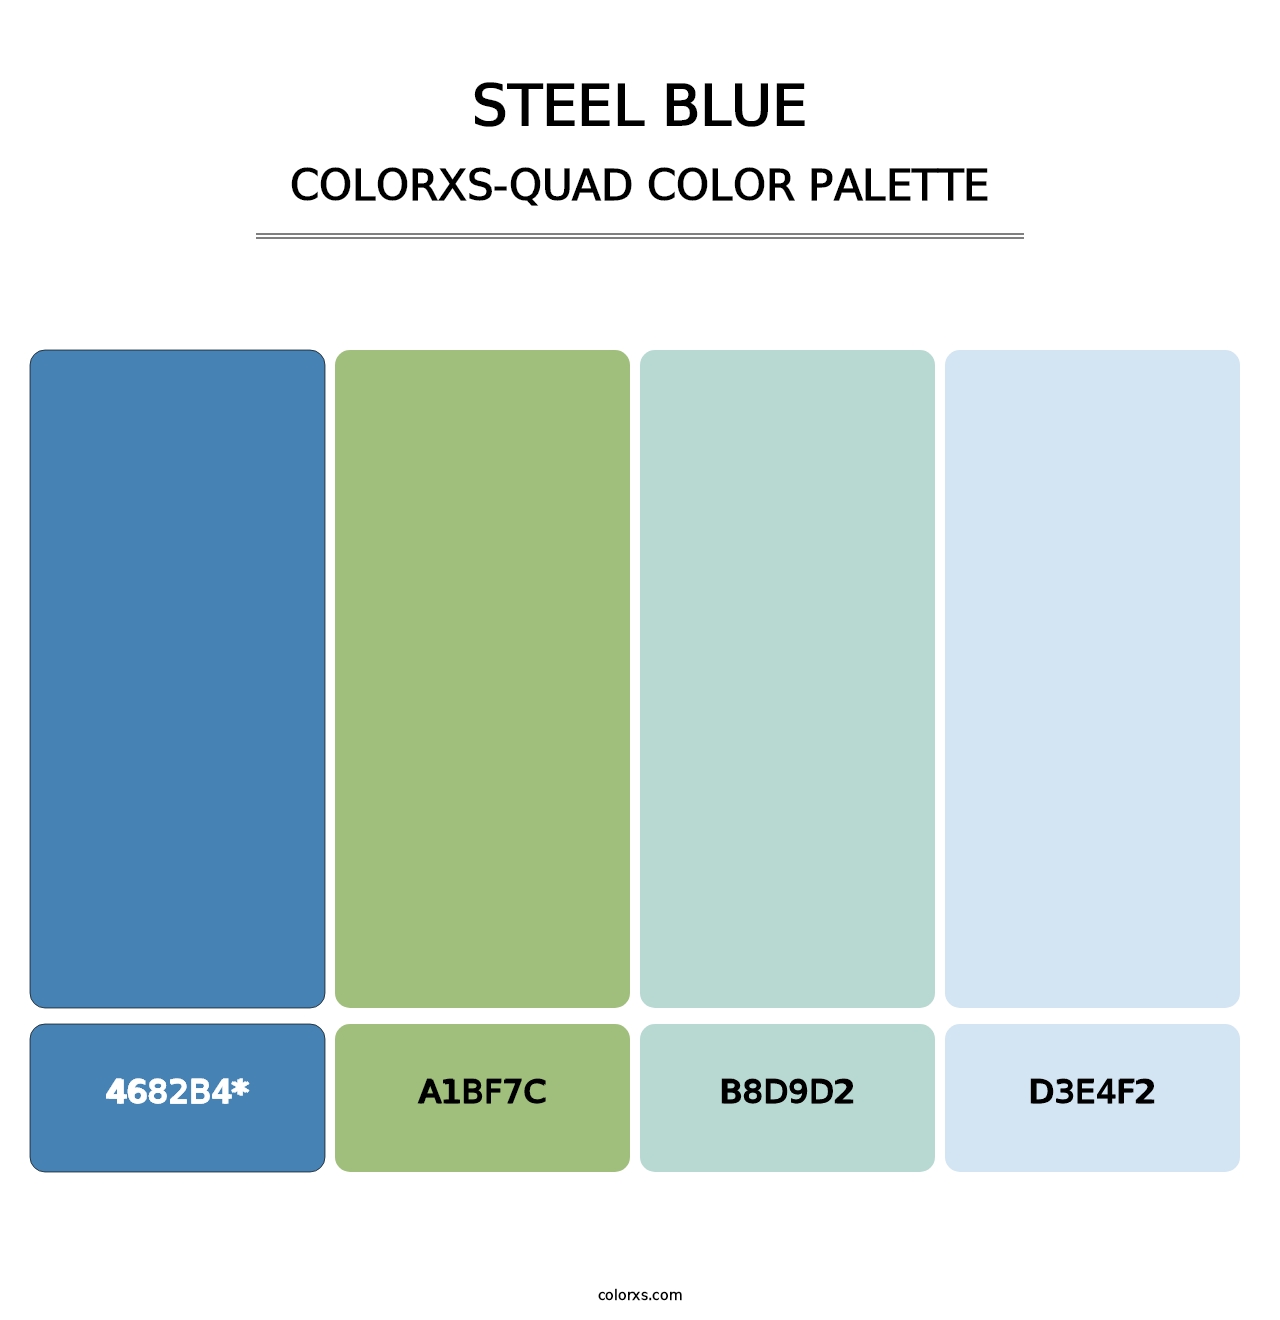 Steel Blue - Colorxs Quad Palette